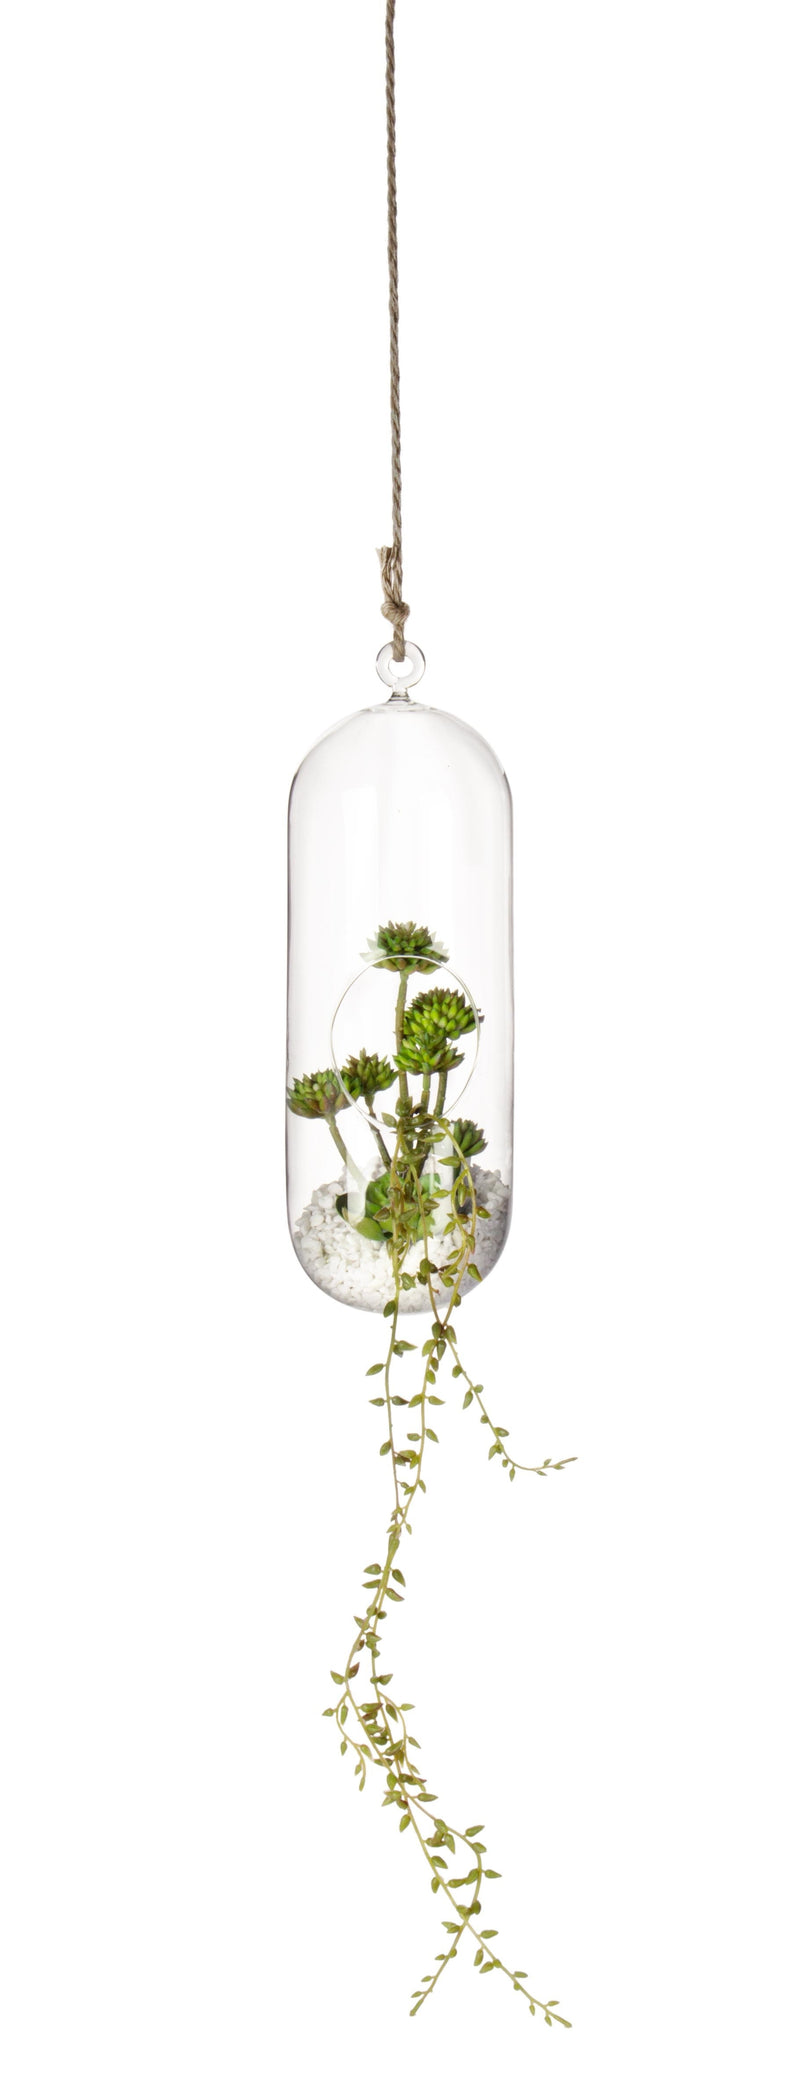 Decoratiune suspendabila din sticla, cu plante Bubble High Transparent / Verde, Ø12,6xH31 cm